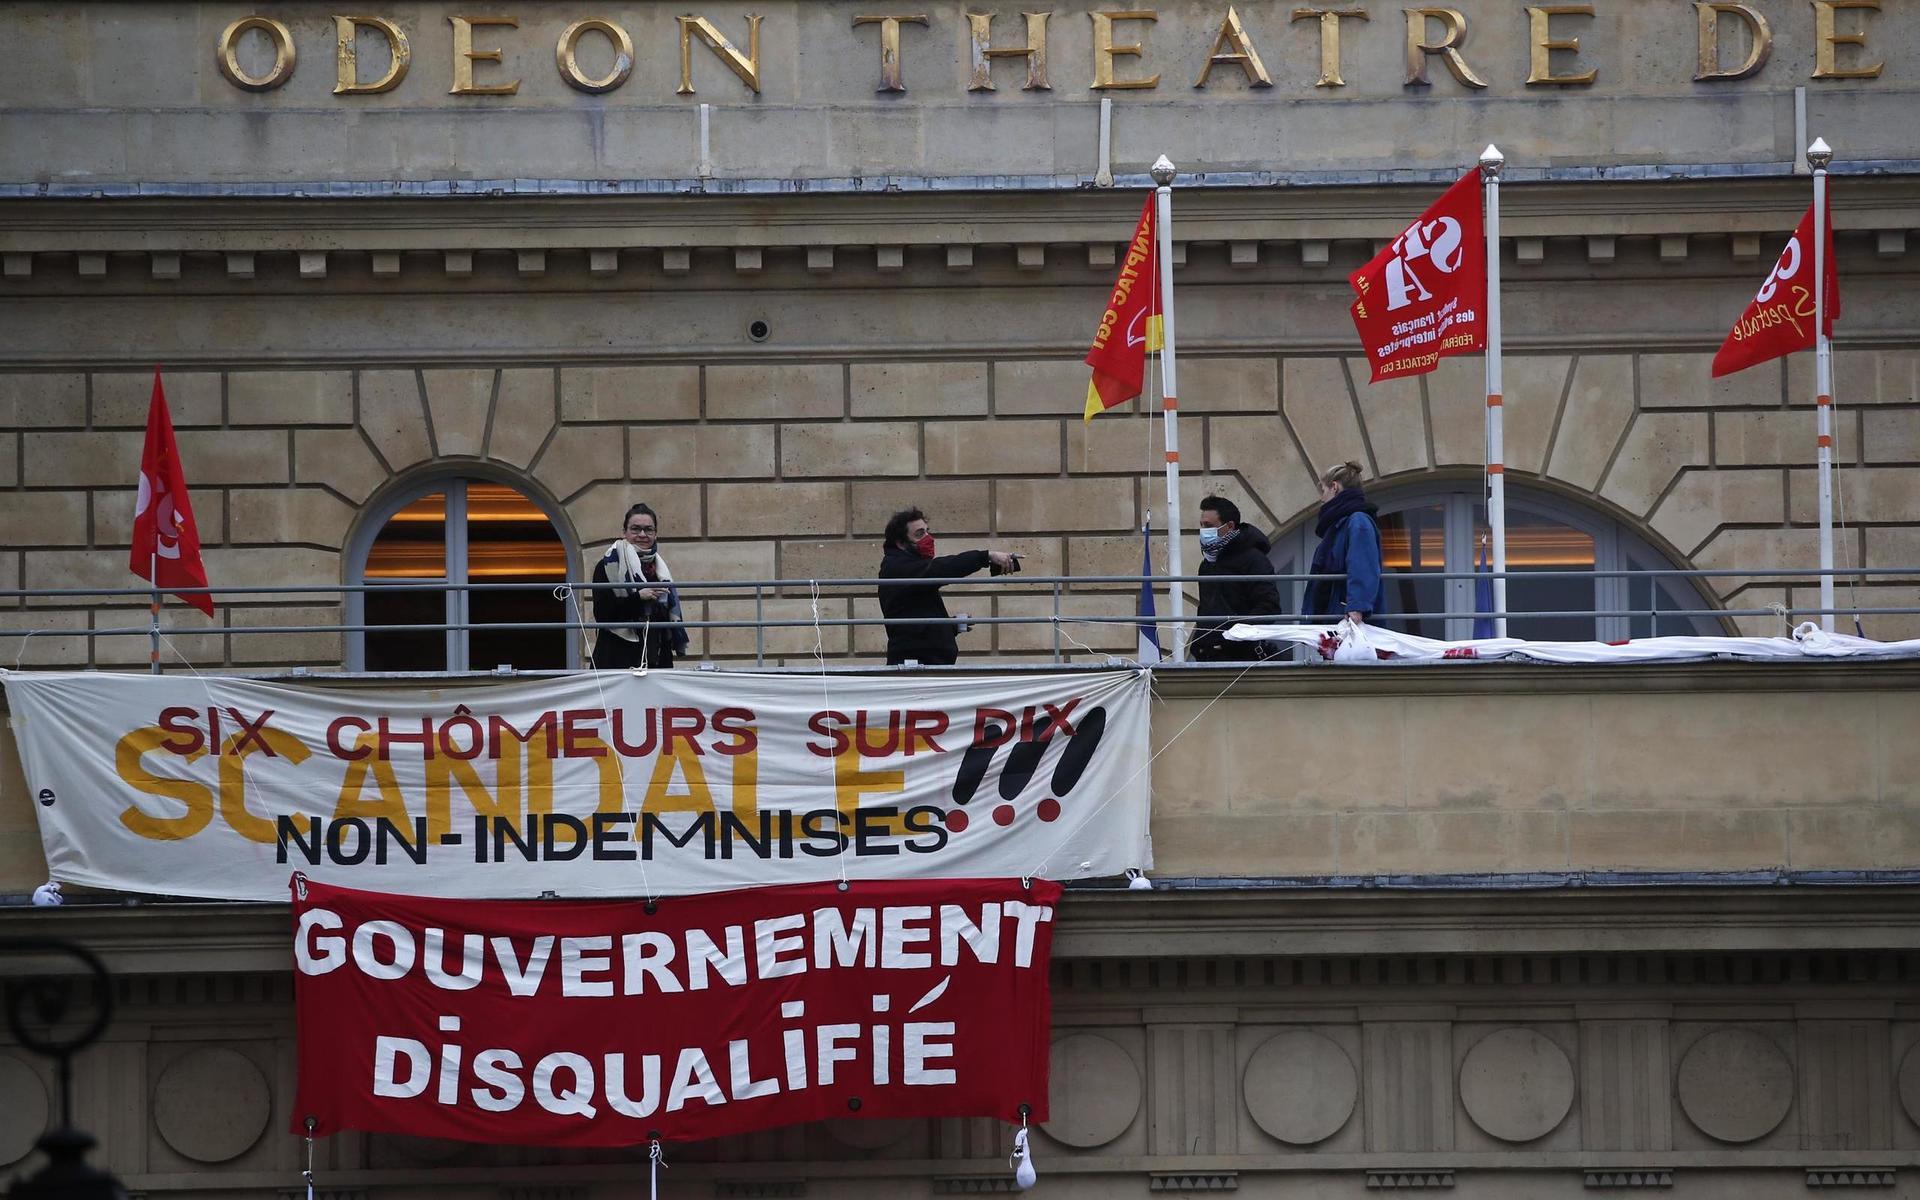 Arbetslösa franska kulturarbetare ockuperar den ikoniska Odéonteatern sen den 4 mars. 